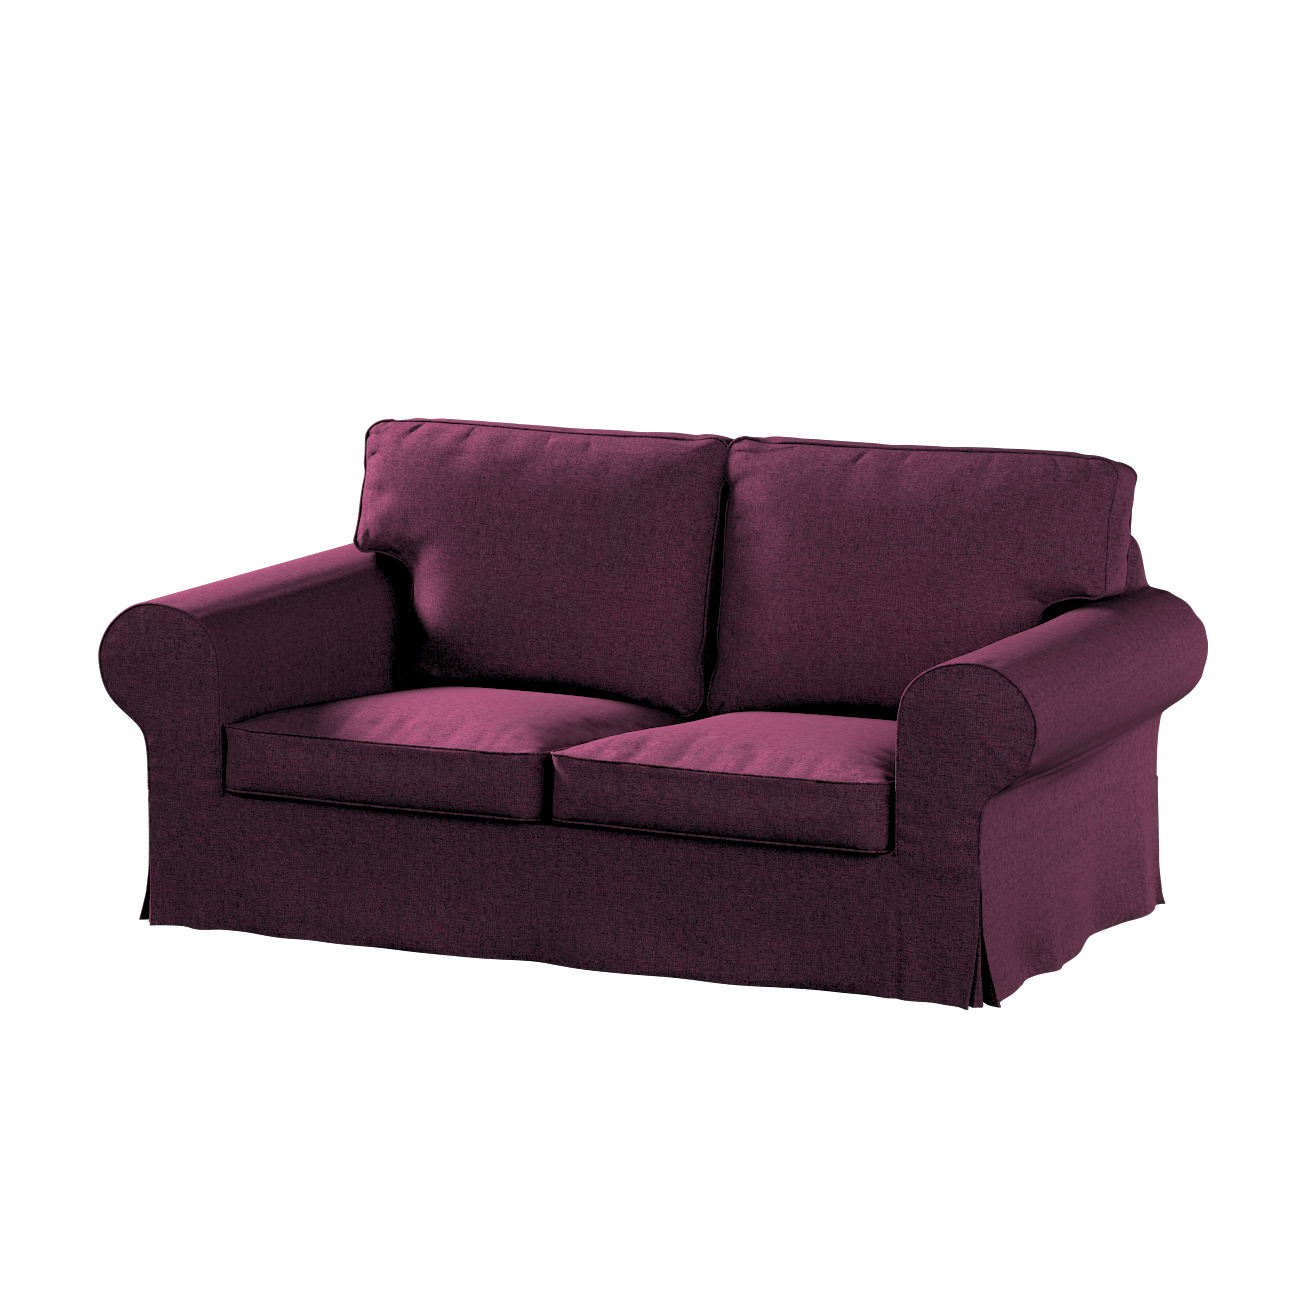 Bezug für Ektorp 2-Sitzer Sofa nicht ausklappbar, pflaumenviolett, Sofabezu günstig online kaufen